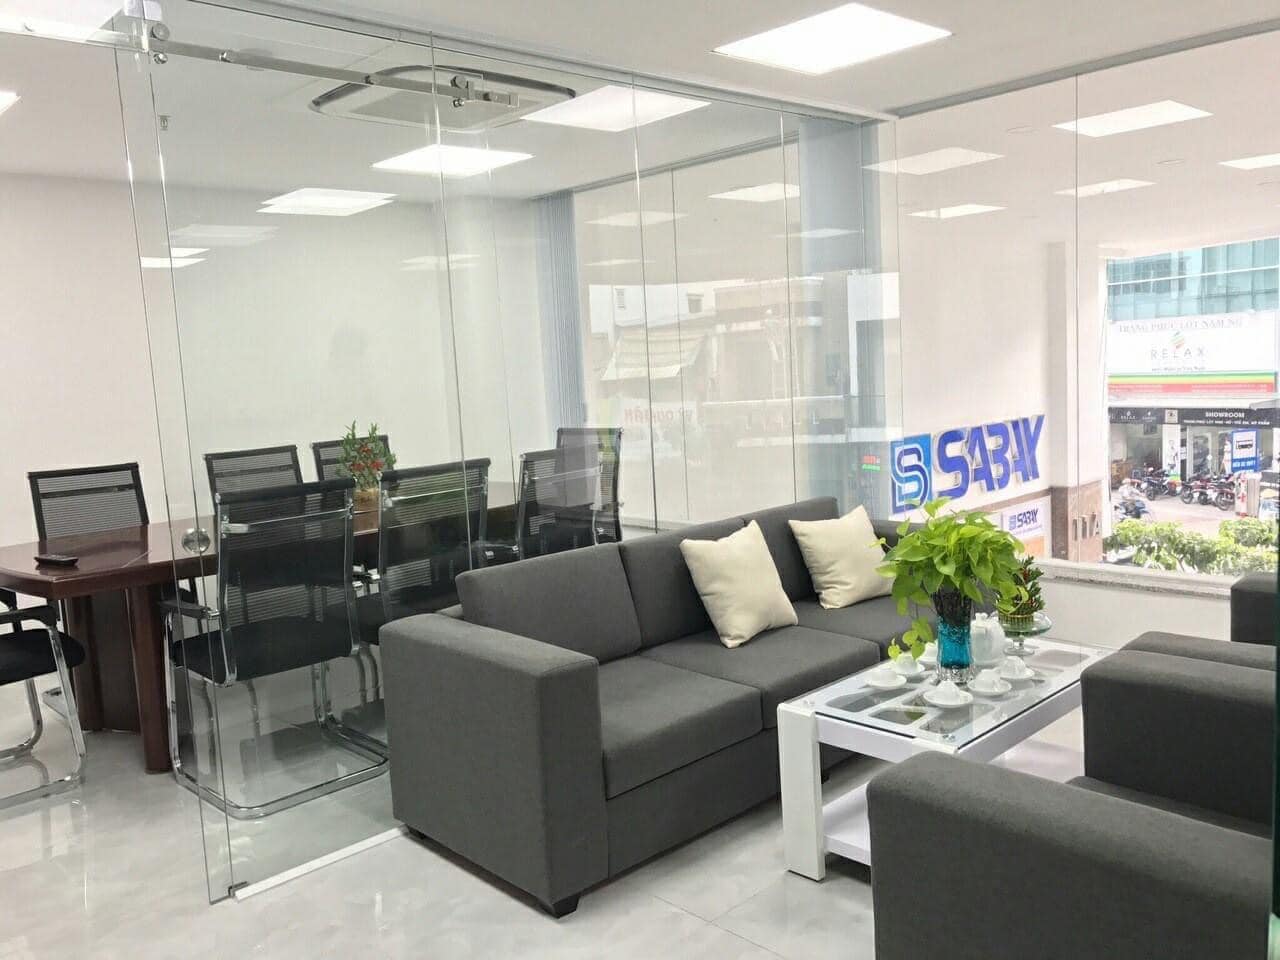 Sabay Office – một trong những đơn vị cho thuê văn phòng ảo tốt nhất tại quận Tân Bình